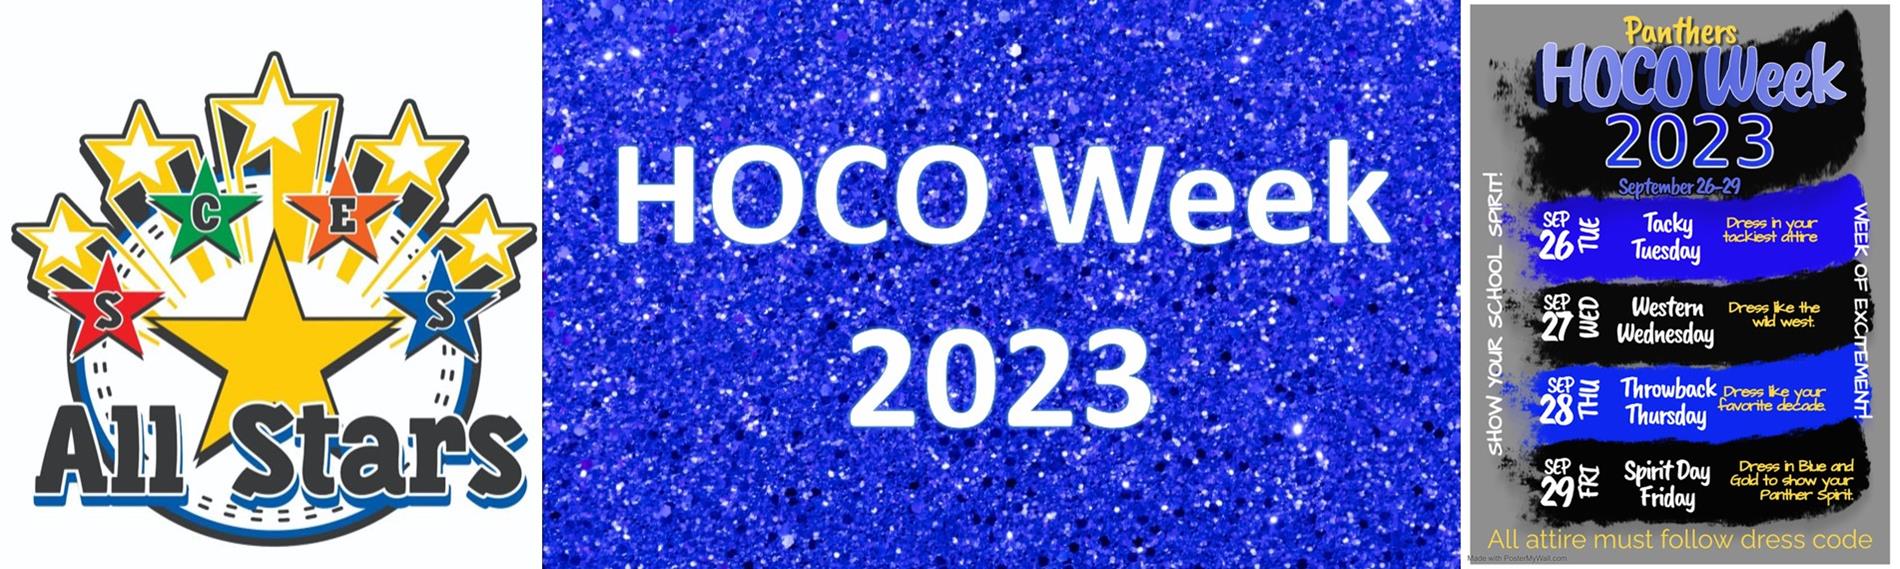 HOCO Week 2023